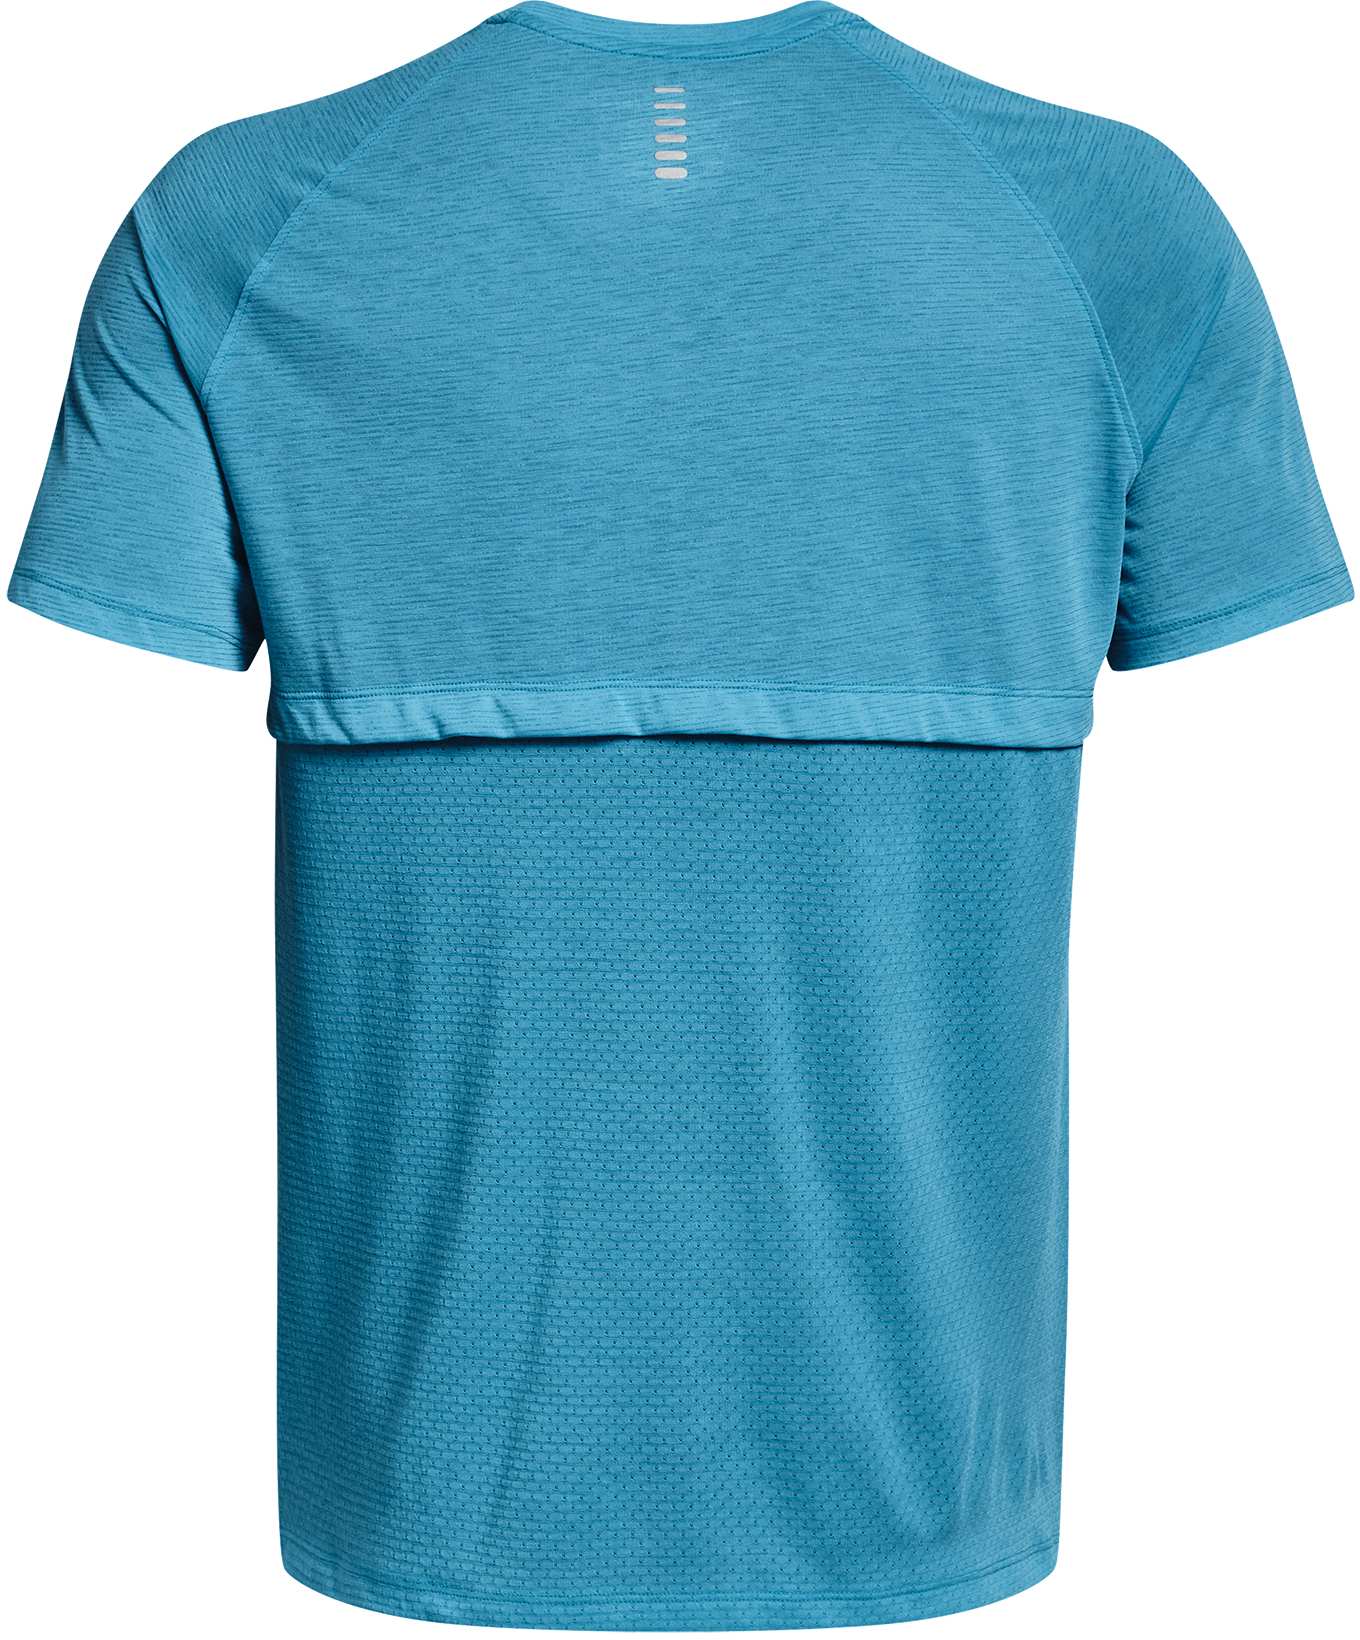 Men’s short sleeved T-shirt